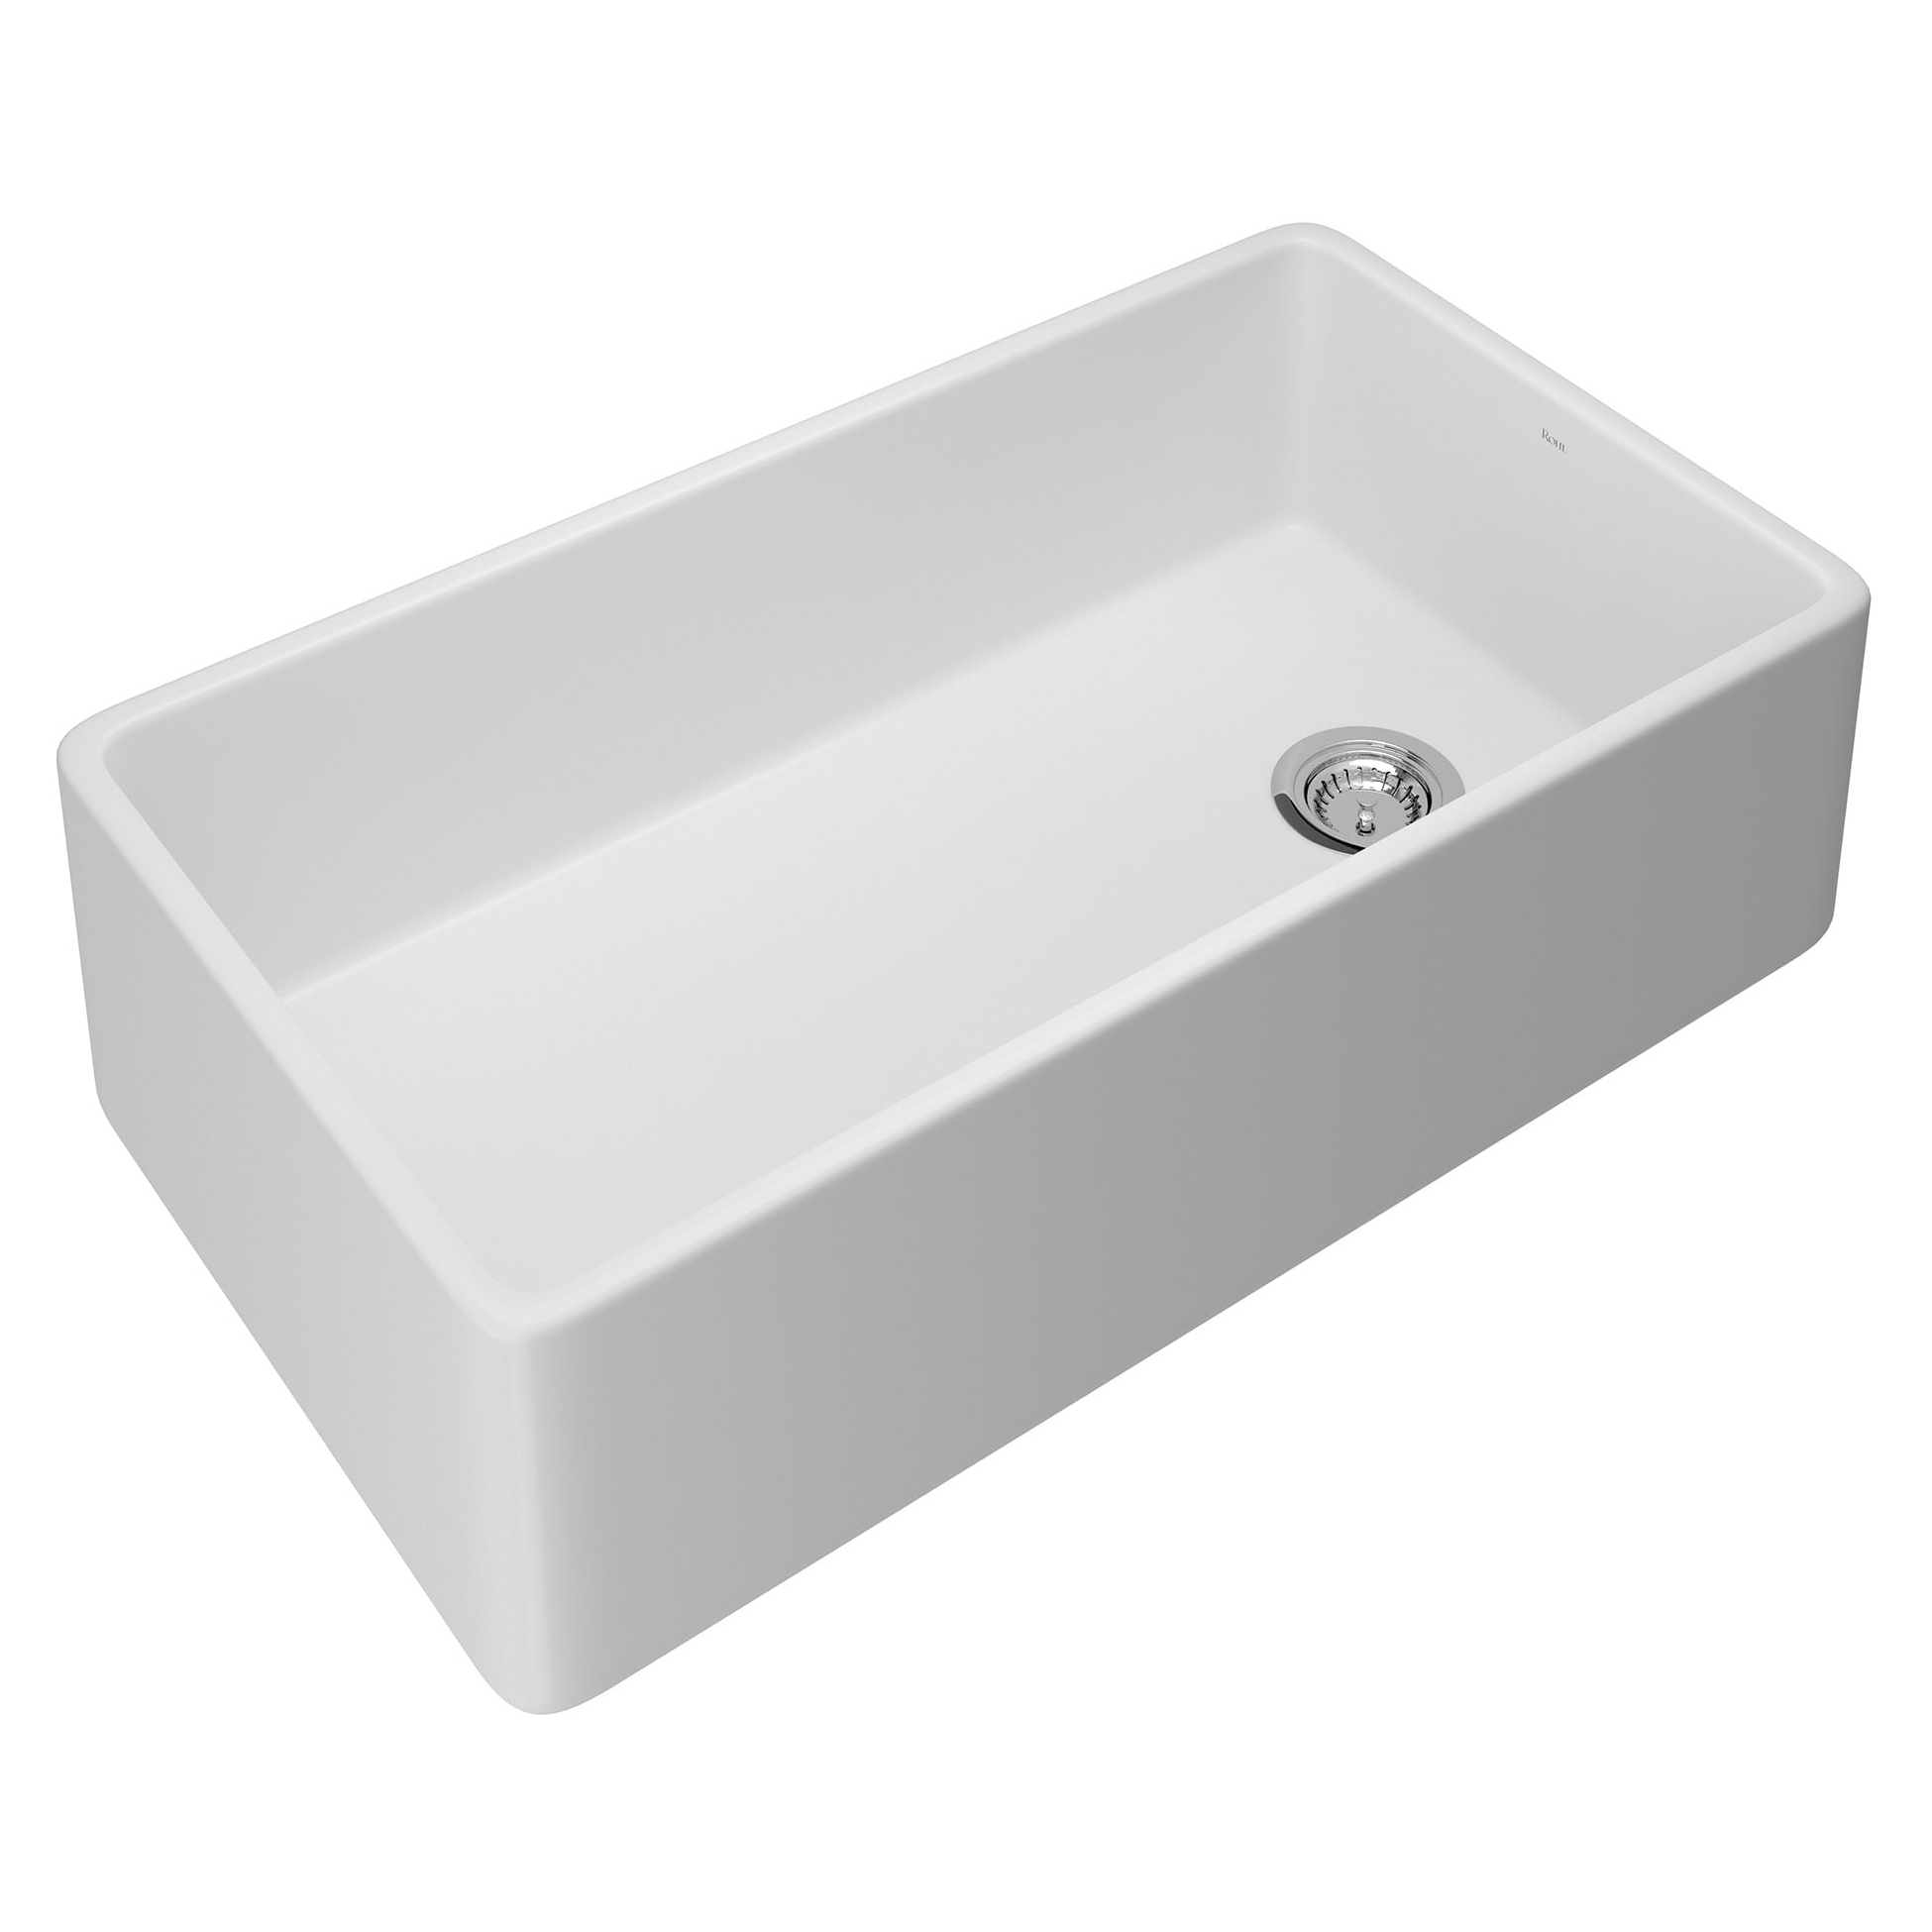 Allia 35-1/2x19-7/8x10" Single Bowl Apron Sink in White